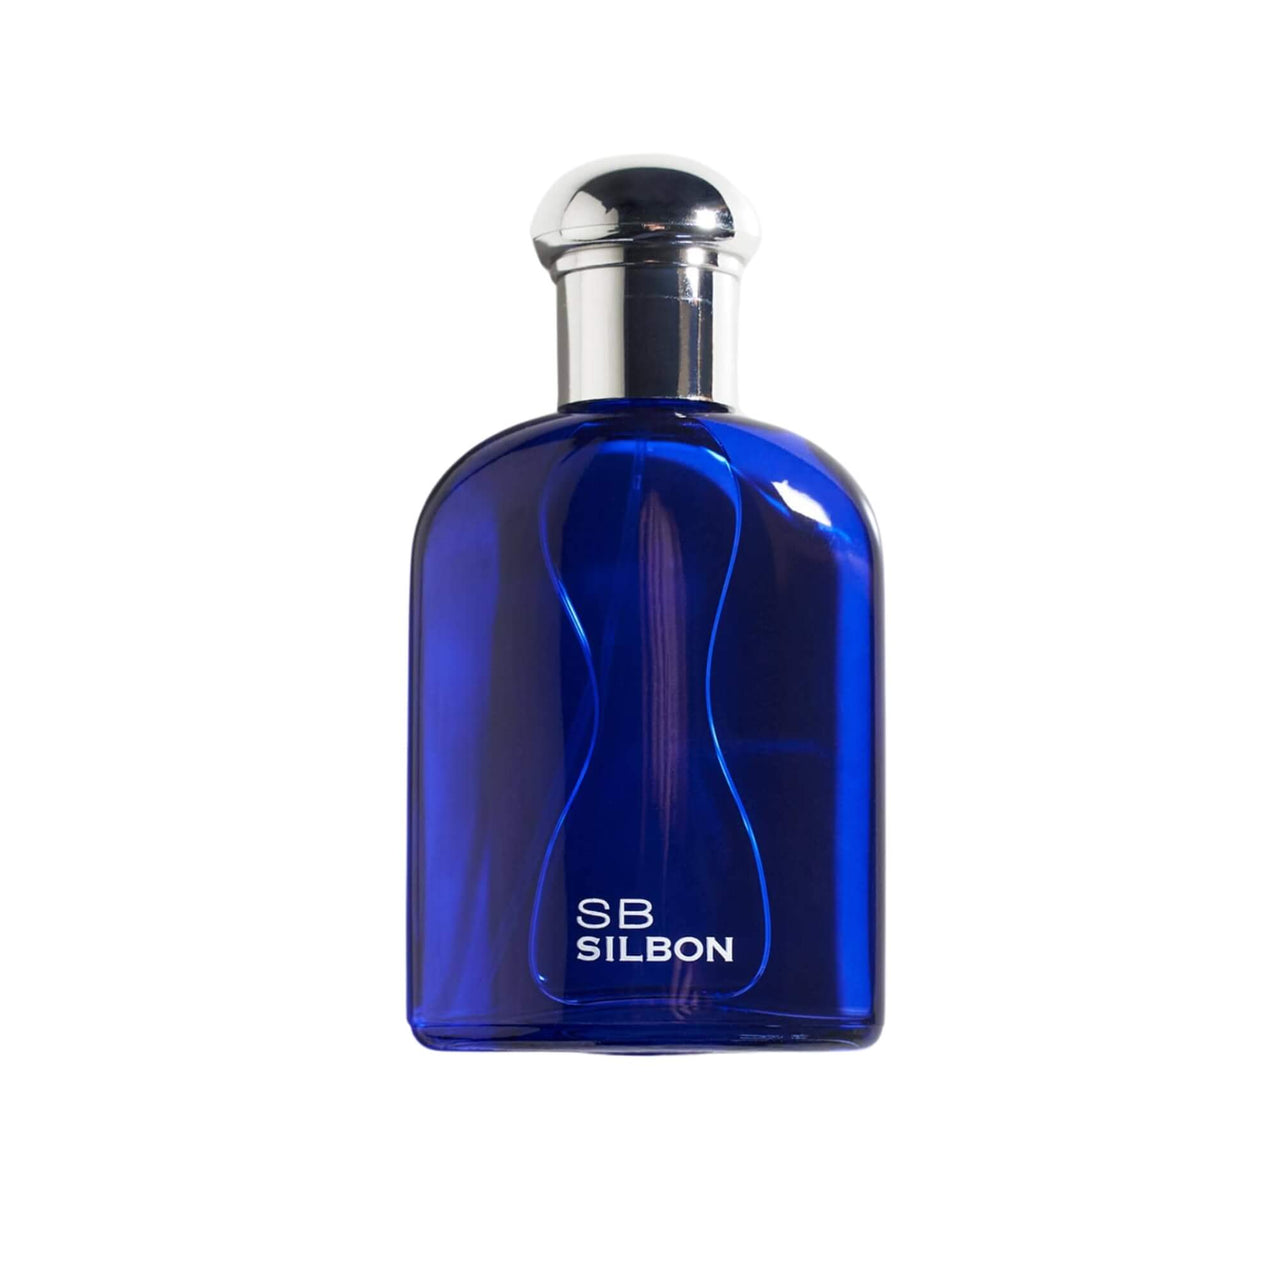 Accesorios/Perfume Silbon Hombre Sb Silbon Fragancia